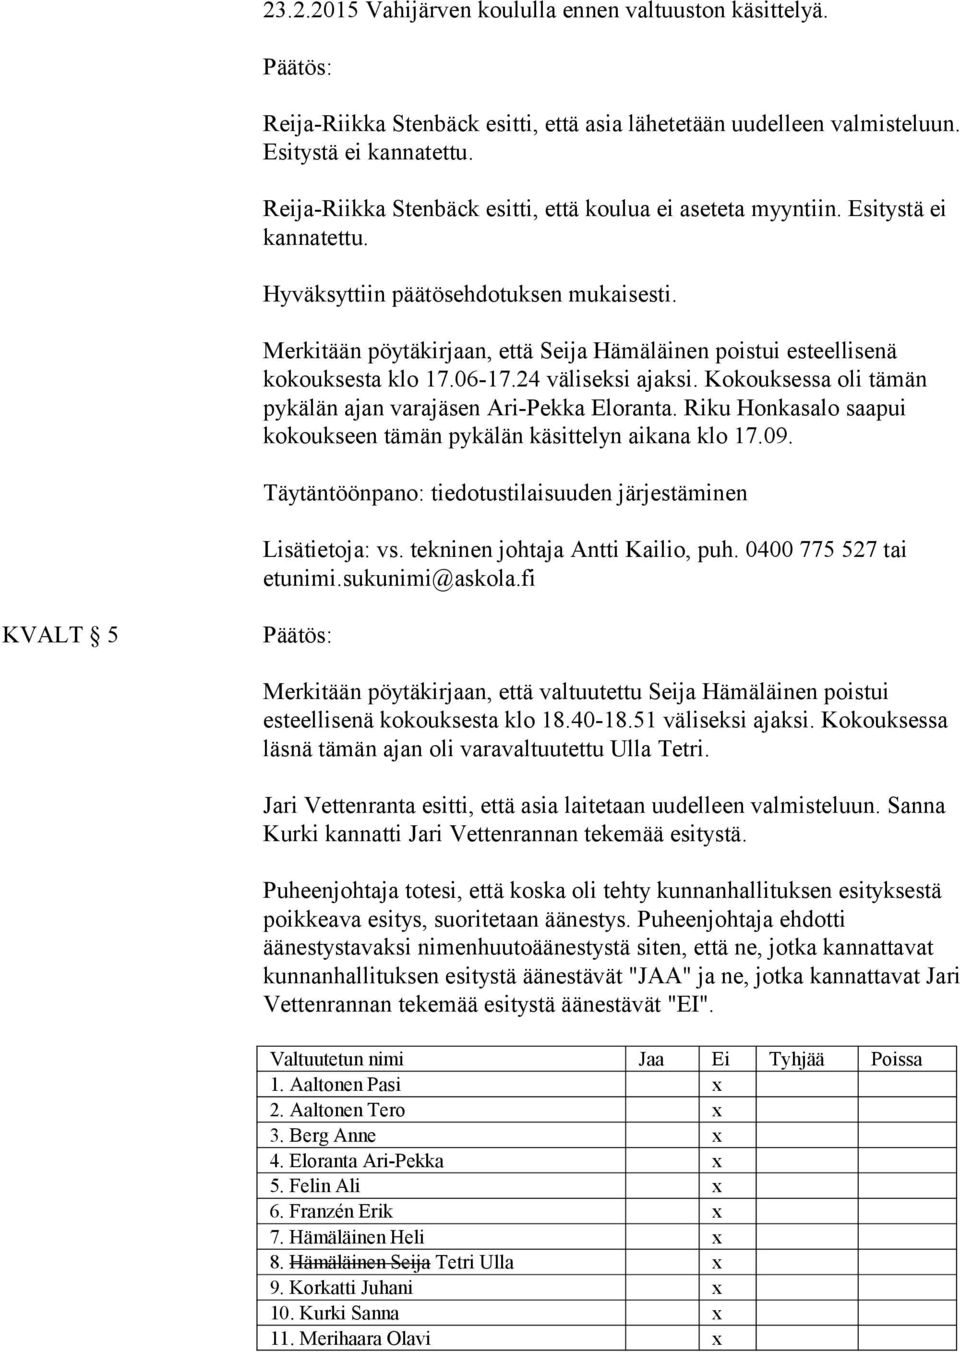 Merkitään pöytäkirjaan, että Seija Hämäläinen poistui esteellisenä kokouksesta klo 17.06-17.24 väliseksi ajaksi. Kokouksessa oli tämän pykälän ajan varajäsen Ari-Pekka Eloranta.